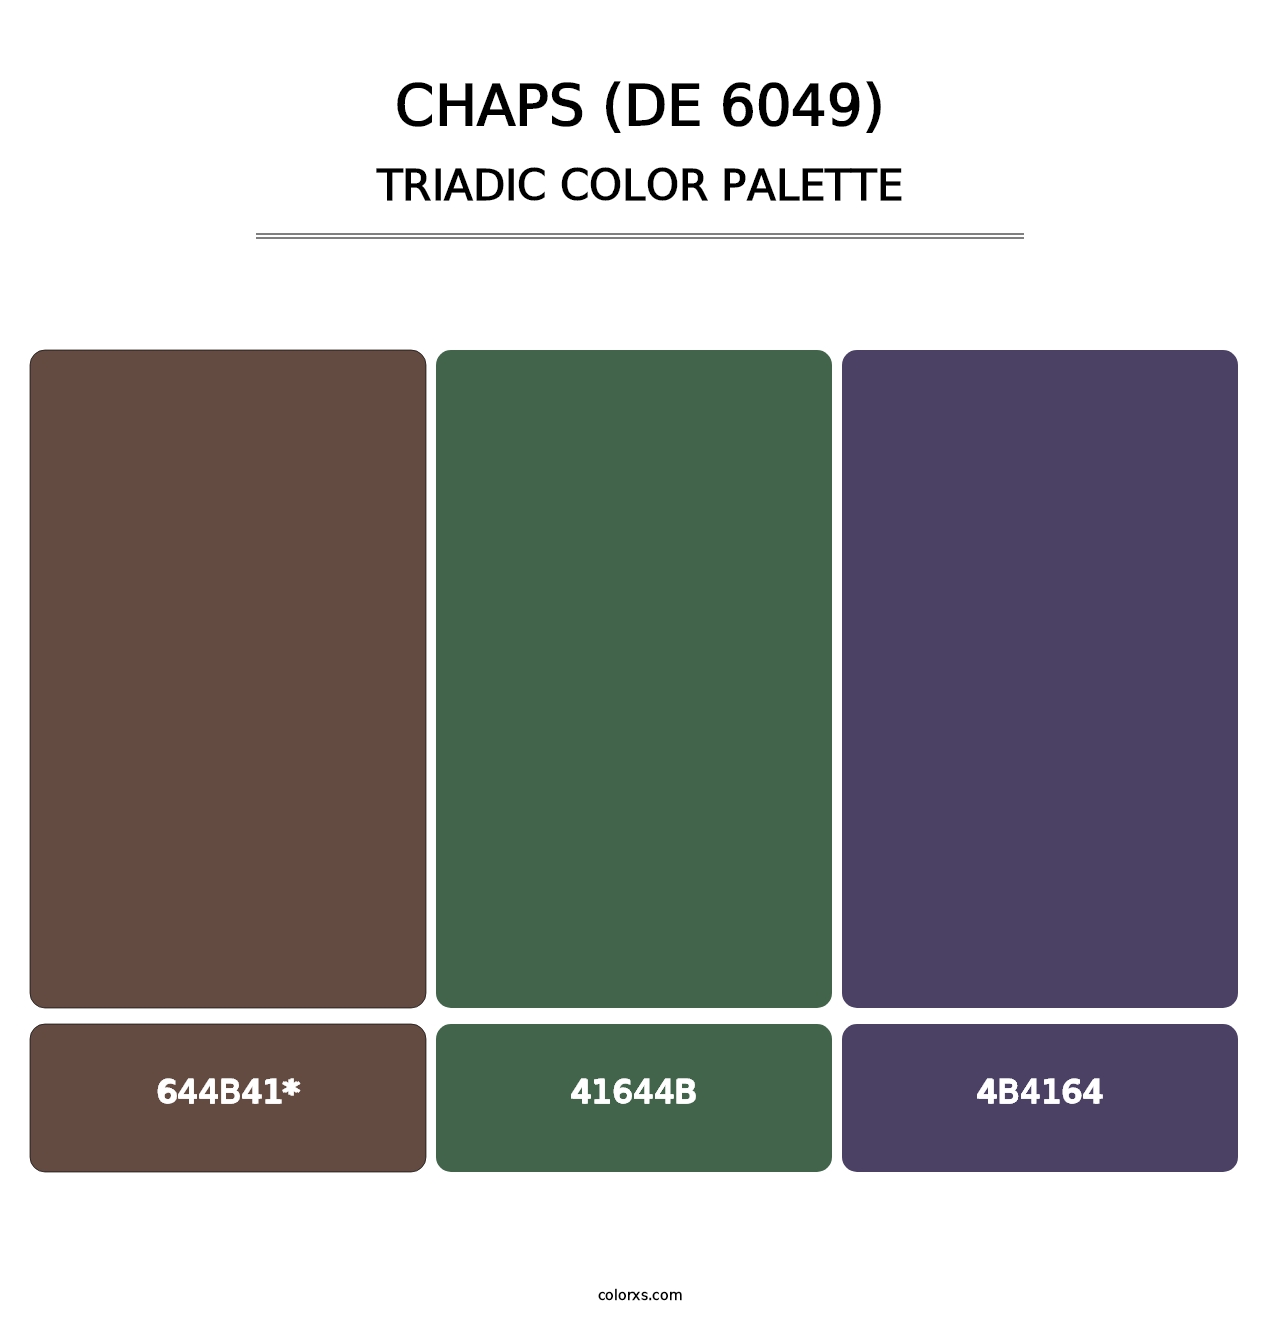 Chaps (DE 6049) - Triadic Color Palette